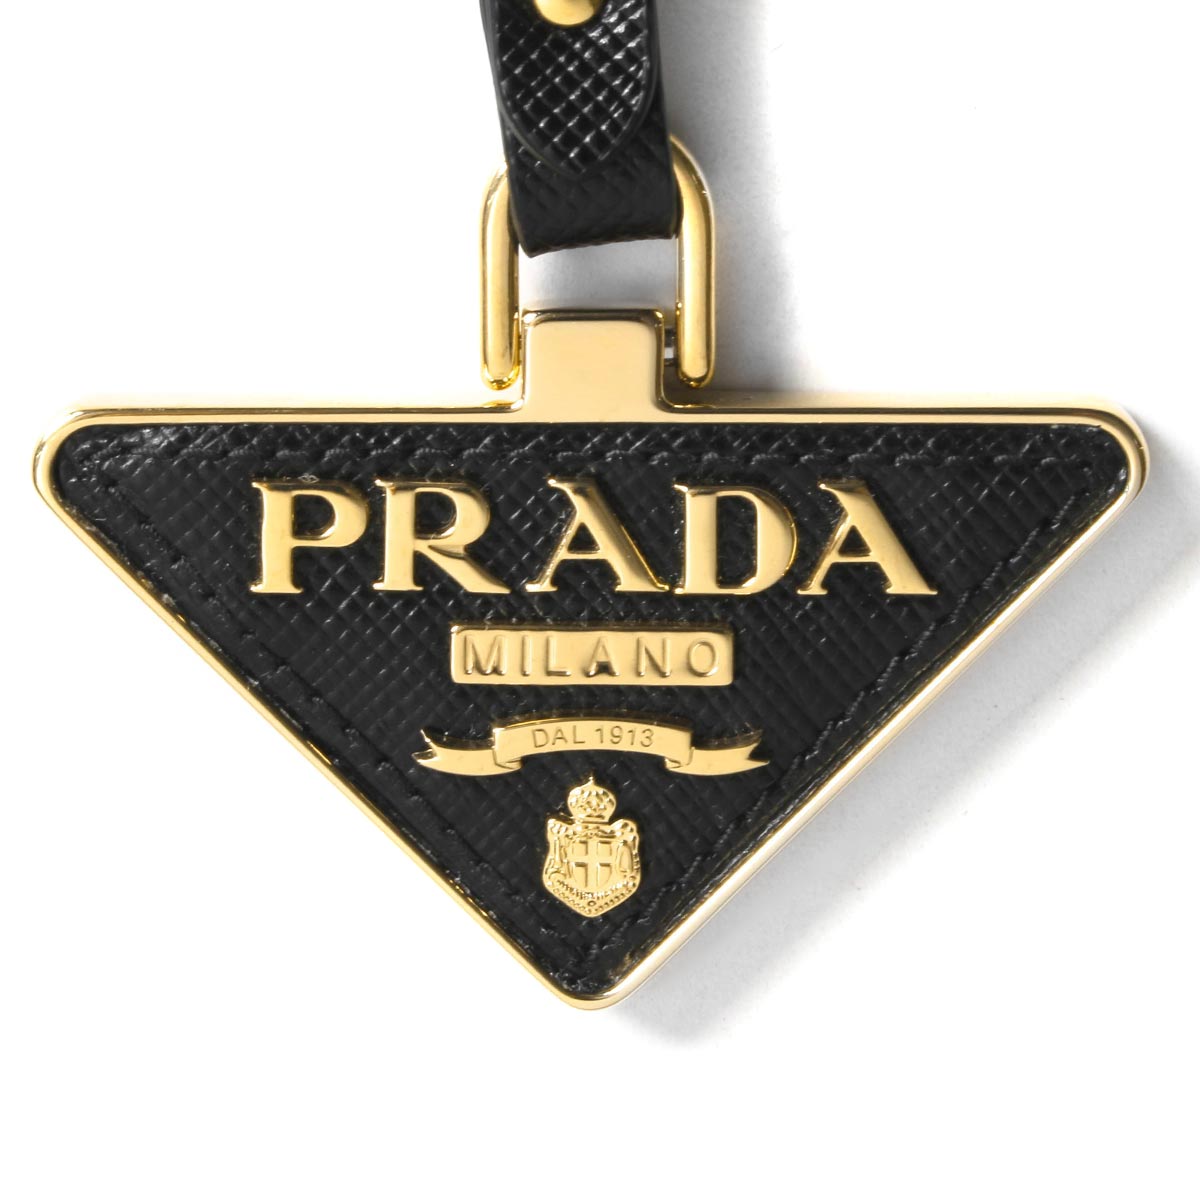 早い者勝ち PRADA プラダ ロゴプレート 長財布 ブラック ゴールド金具